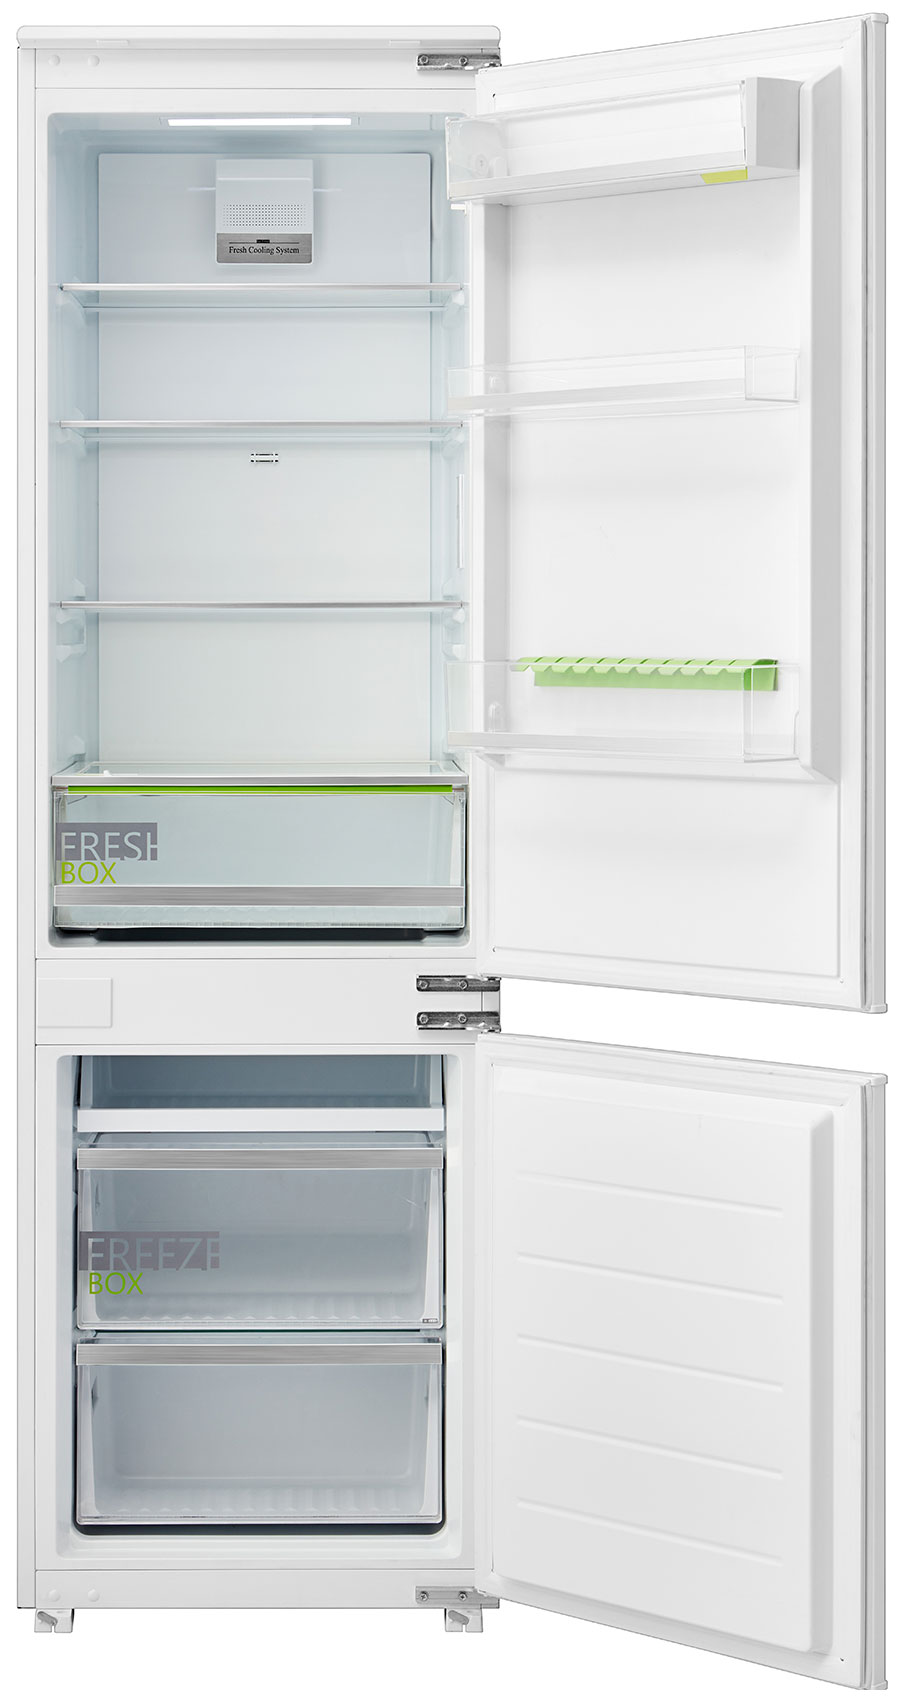 Встраиваемый двухкамерный холодильник Midea MDRE353FGF01